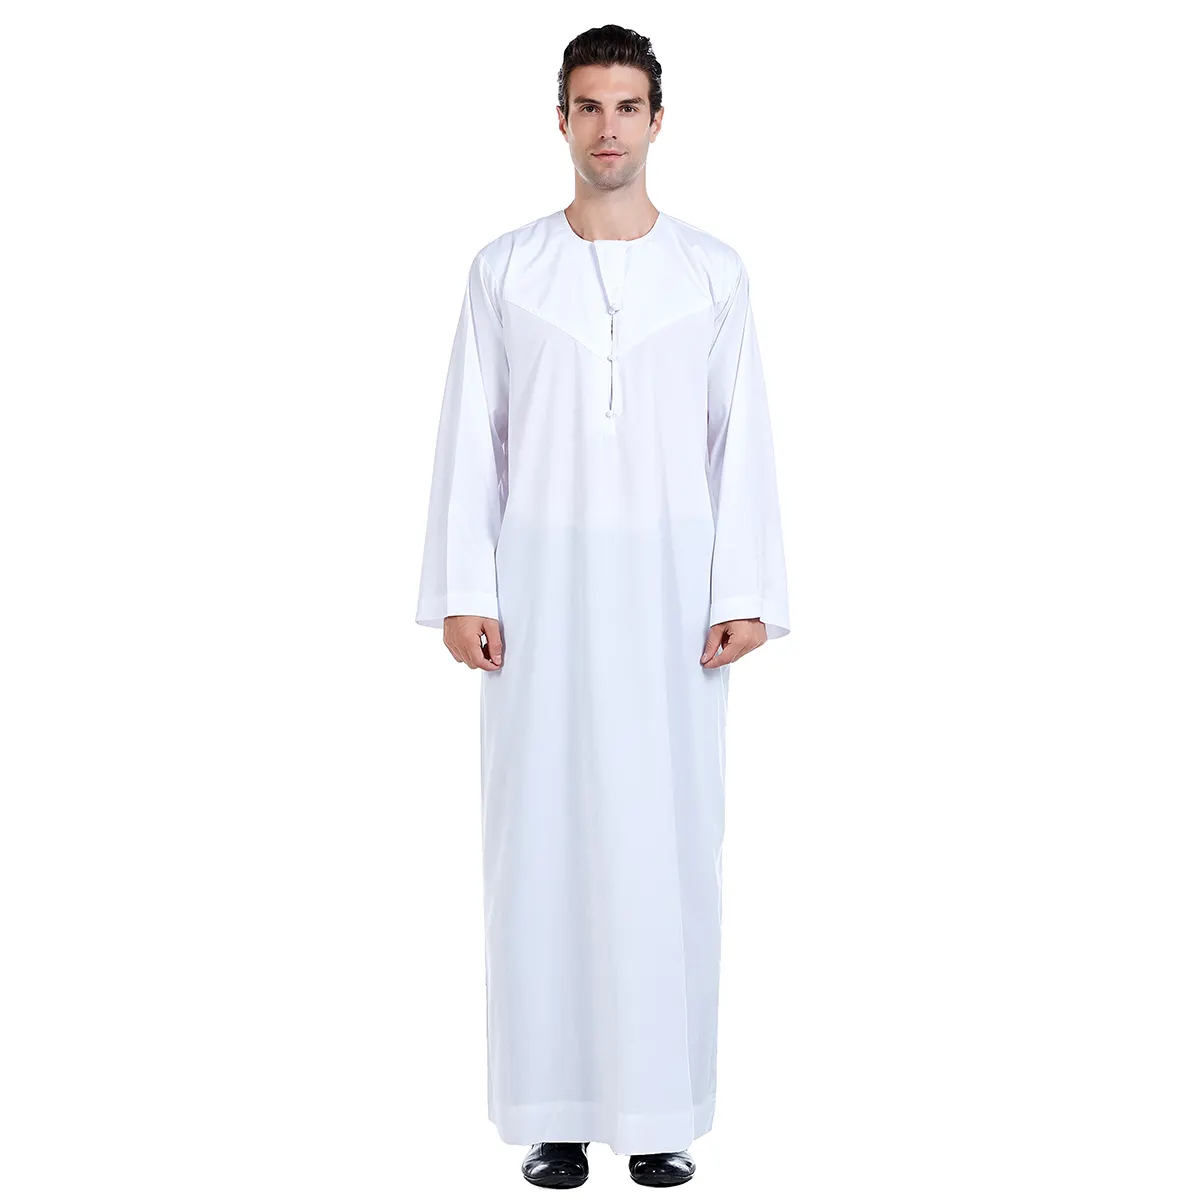 Toptan son tasarım pamuk dubai jumen thobe moda islam erkekler için